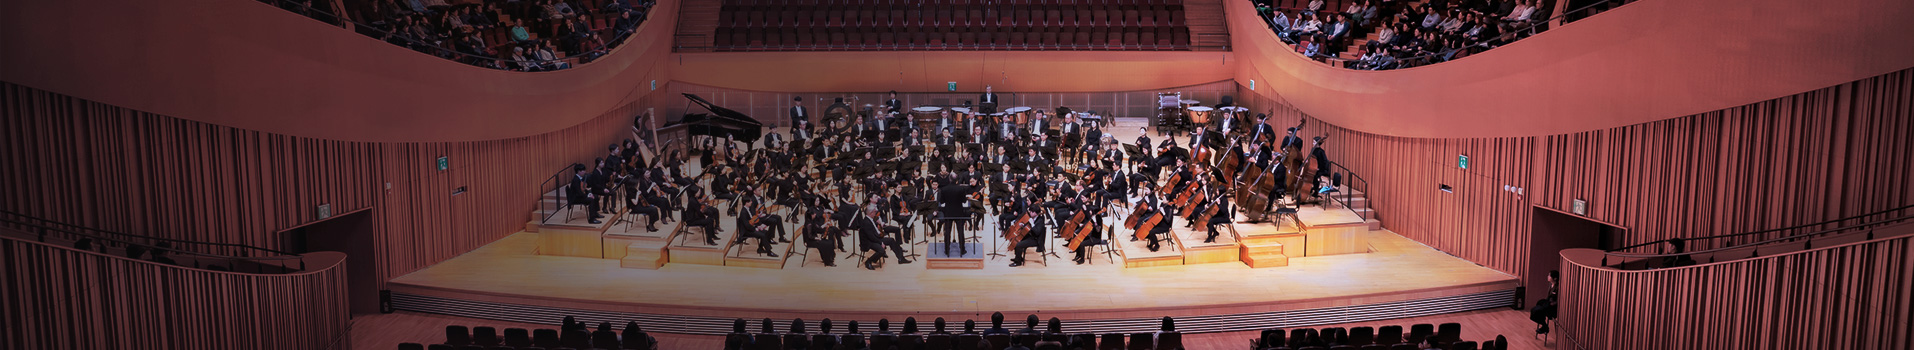 무대위 공연중인 오케스트라 단원들 모습